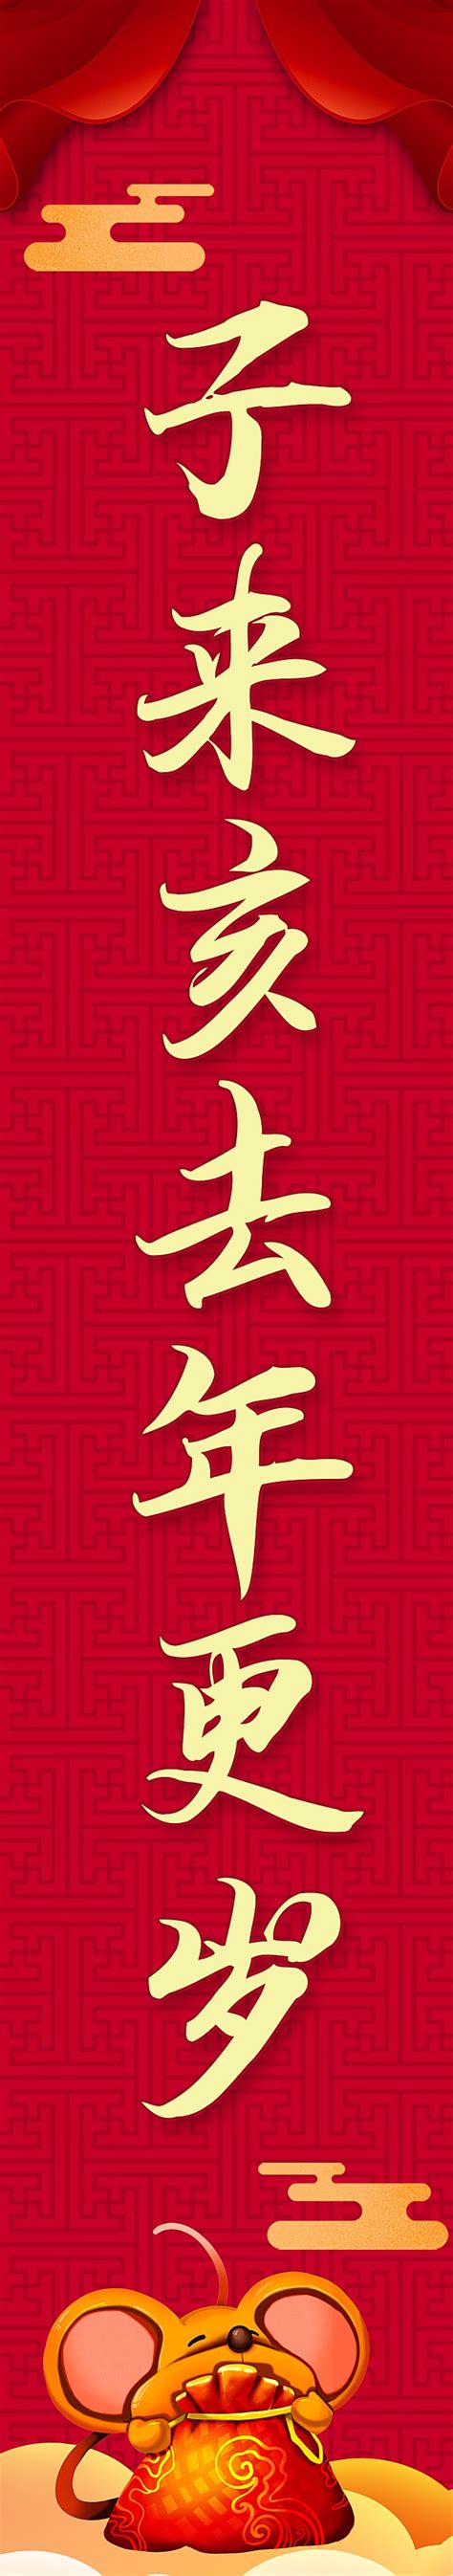 dísticos do festival da primavera vermelho festivo de 2020 ano novo chinês dia de ano novo